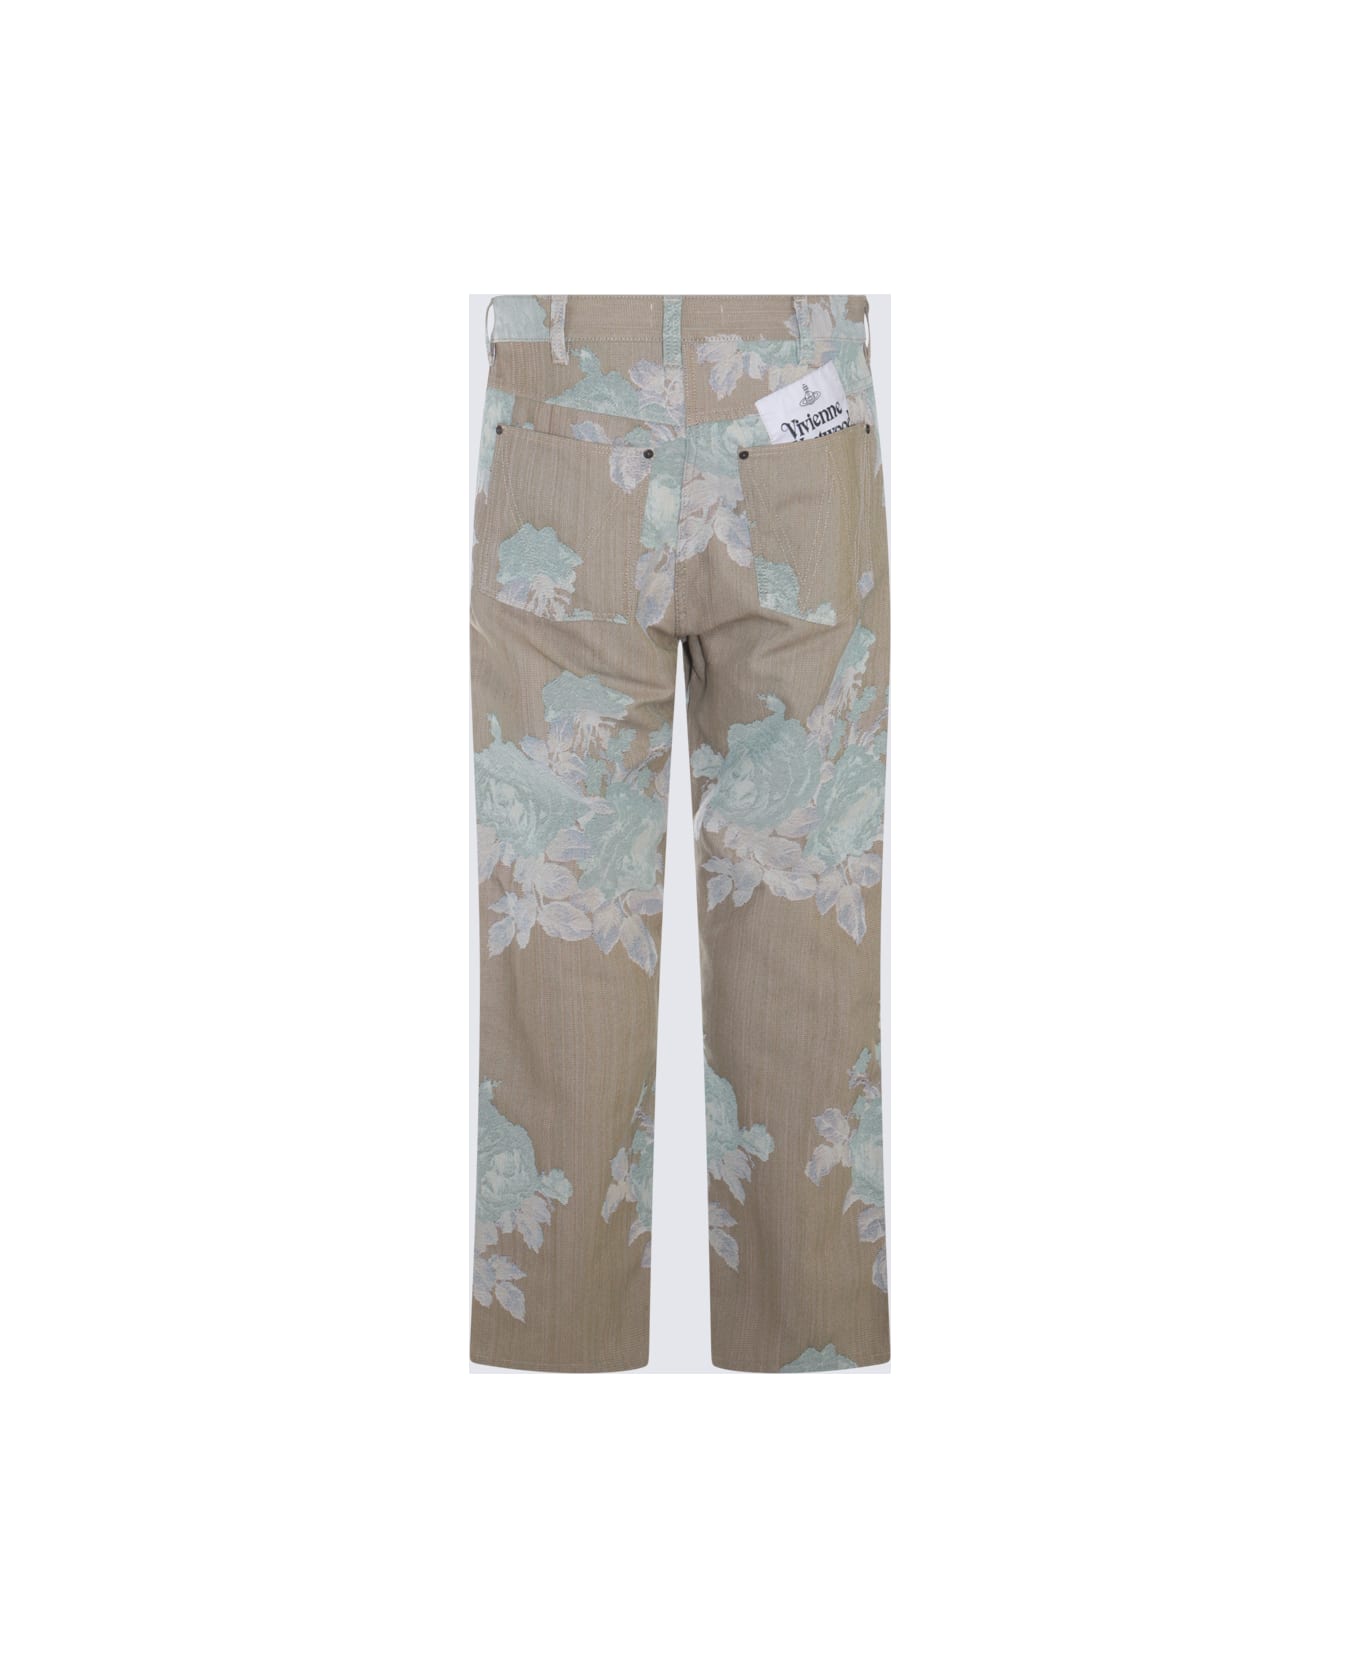 Vivienne Westwood Beige Cotton Pants - Roses